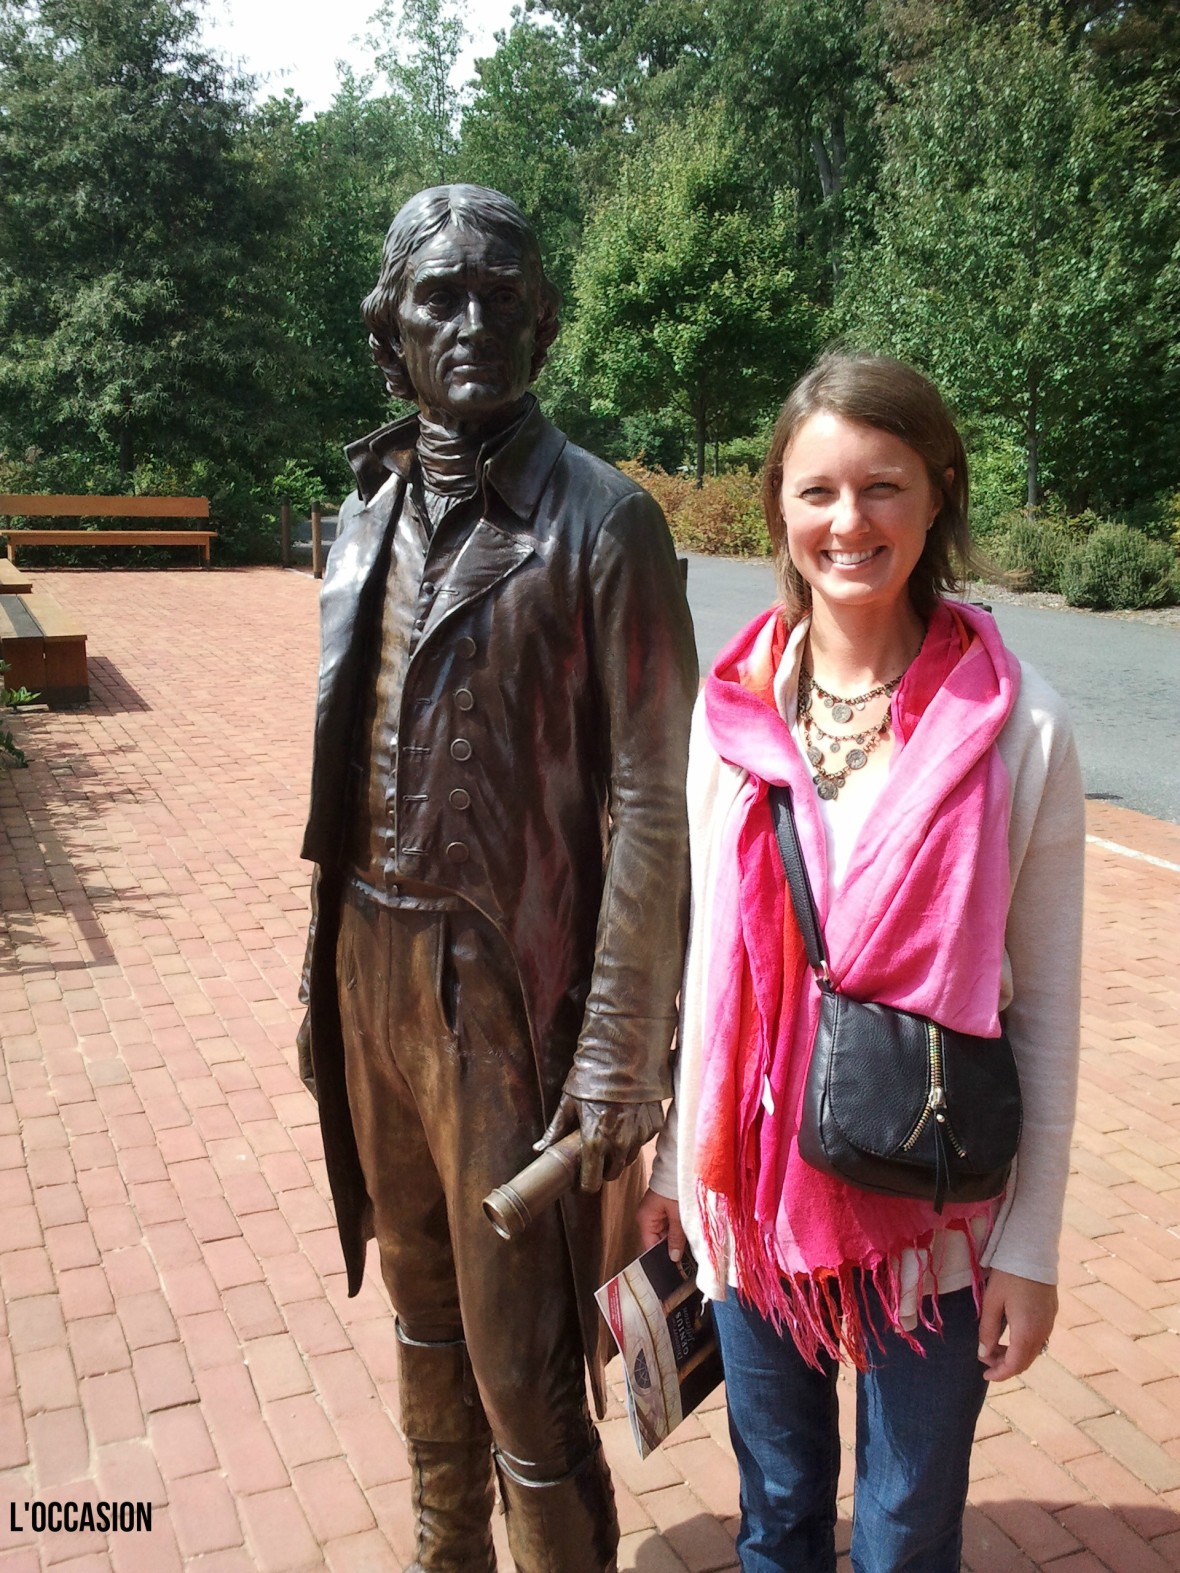 Thomas Jefferson at Monticello